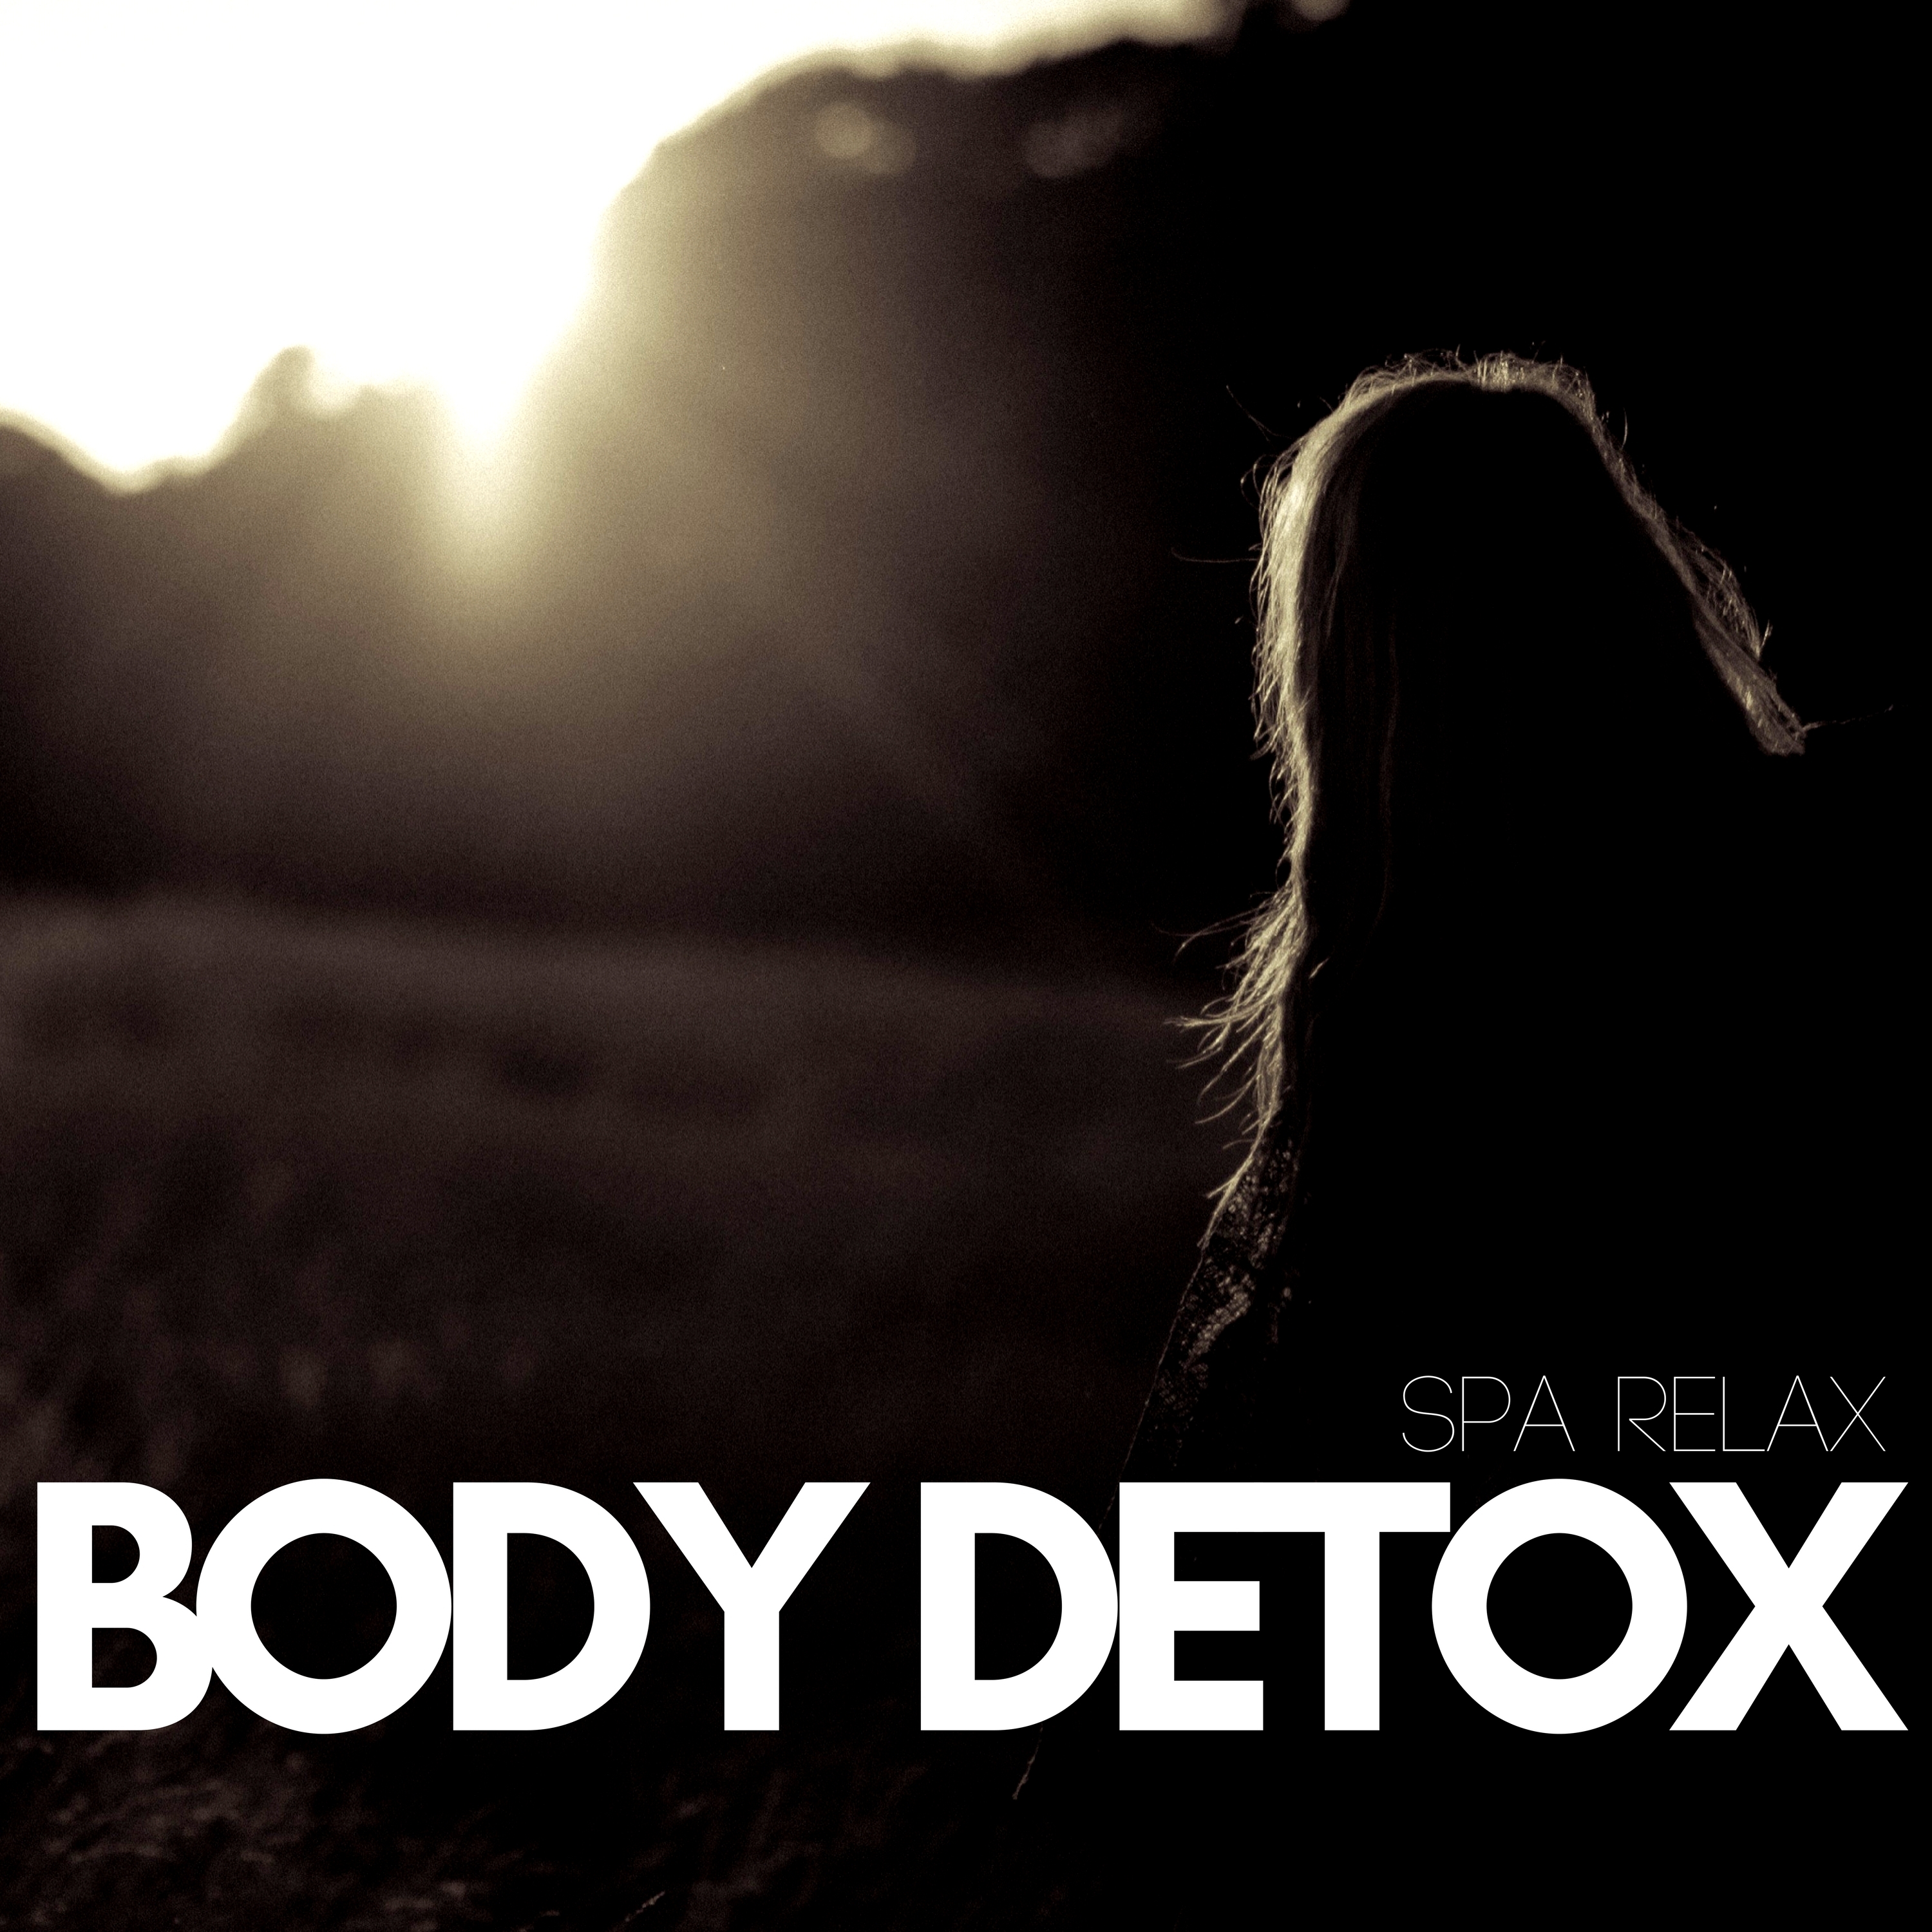 Body Detox: Spa Relax, Deep Relax Massage, Beauty Center, Relaxing Music,